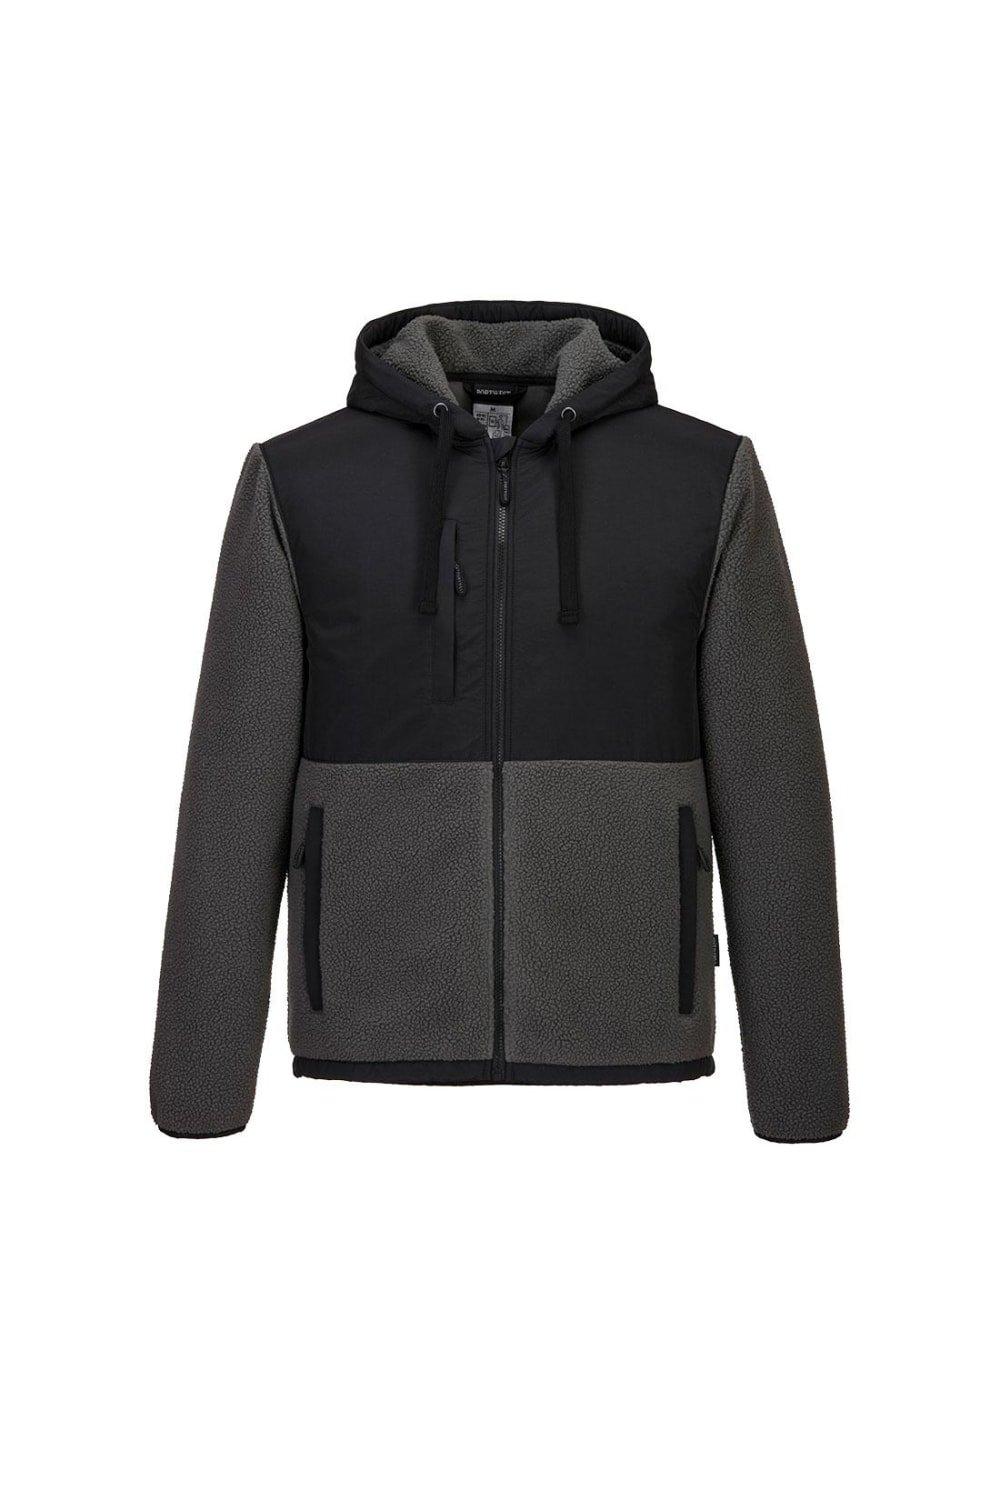 Флисовая куртка KX3 Борг Portwest, черный чехол mypads странный чертик с длинными пальцами для meizu m5 note задняя панель накладка бампер